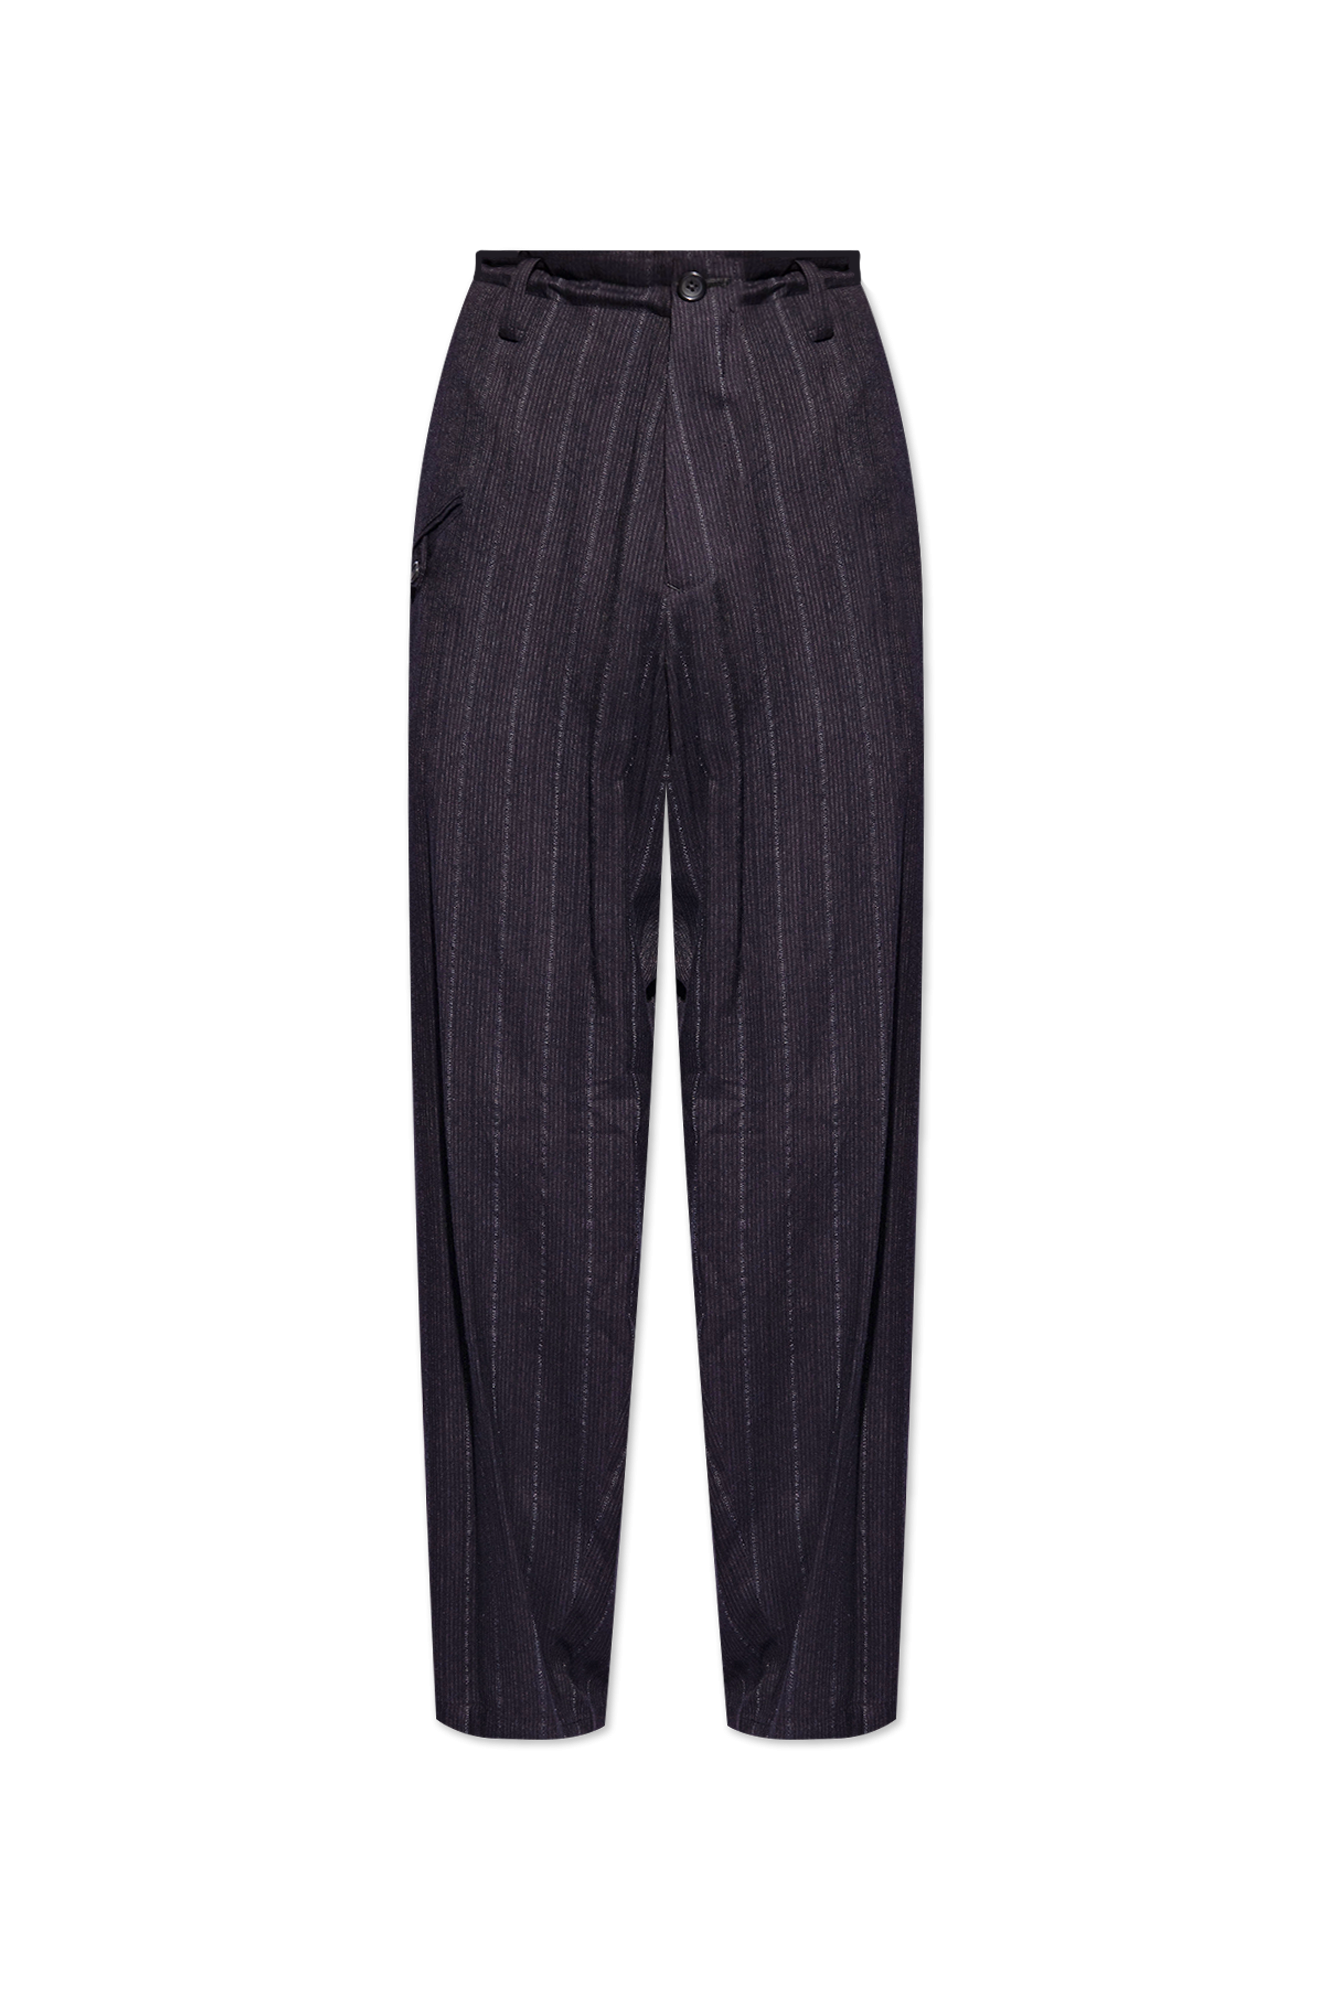 Yohji Yamamoto Trousers with pockets